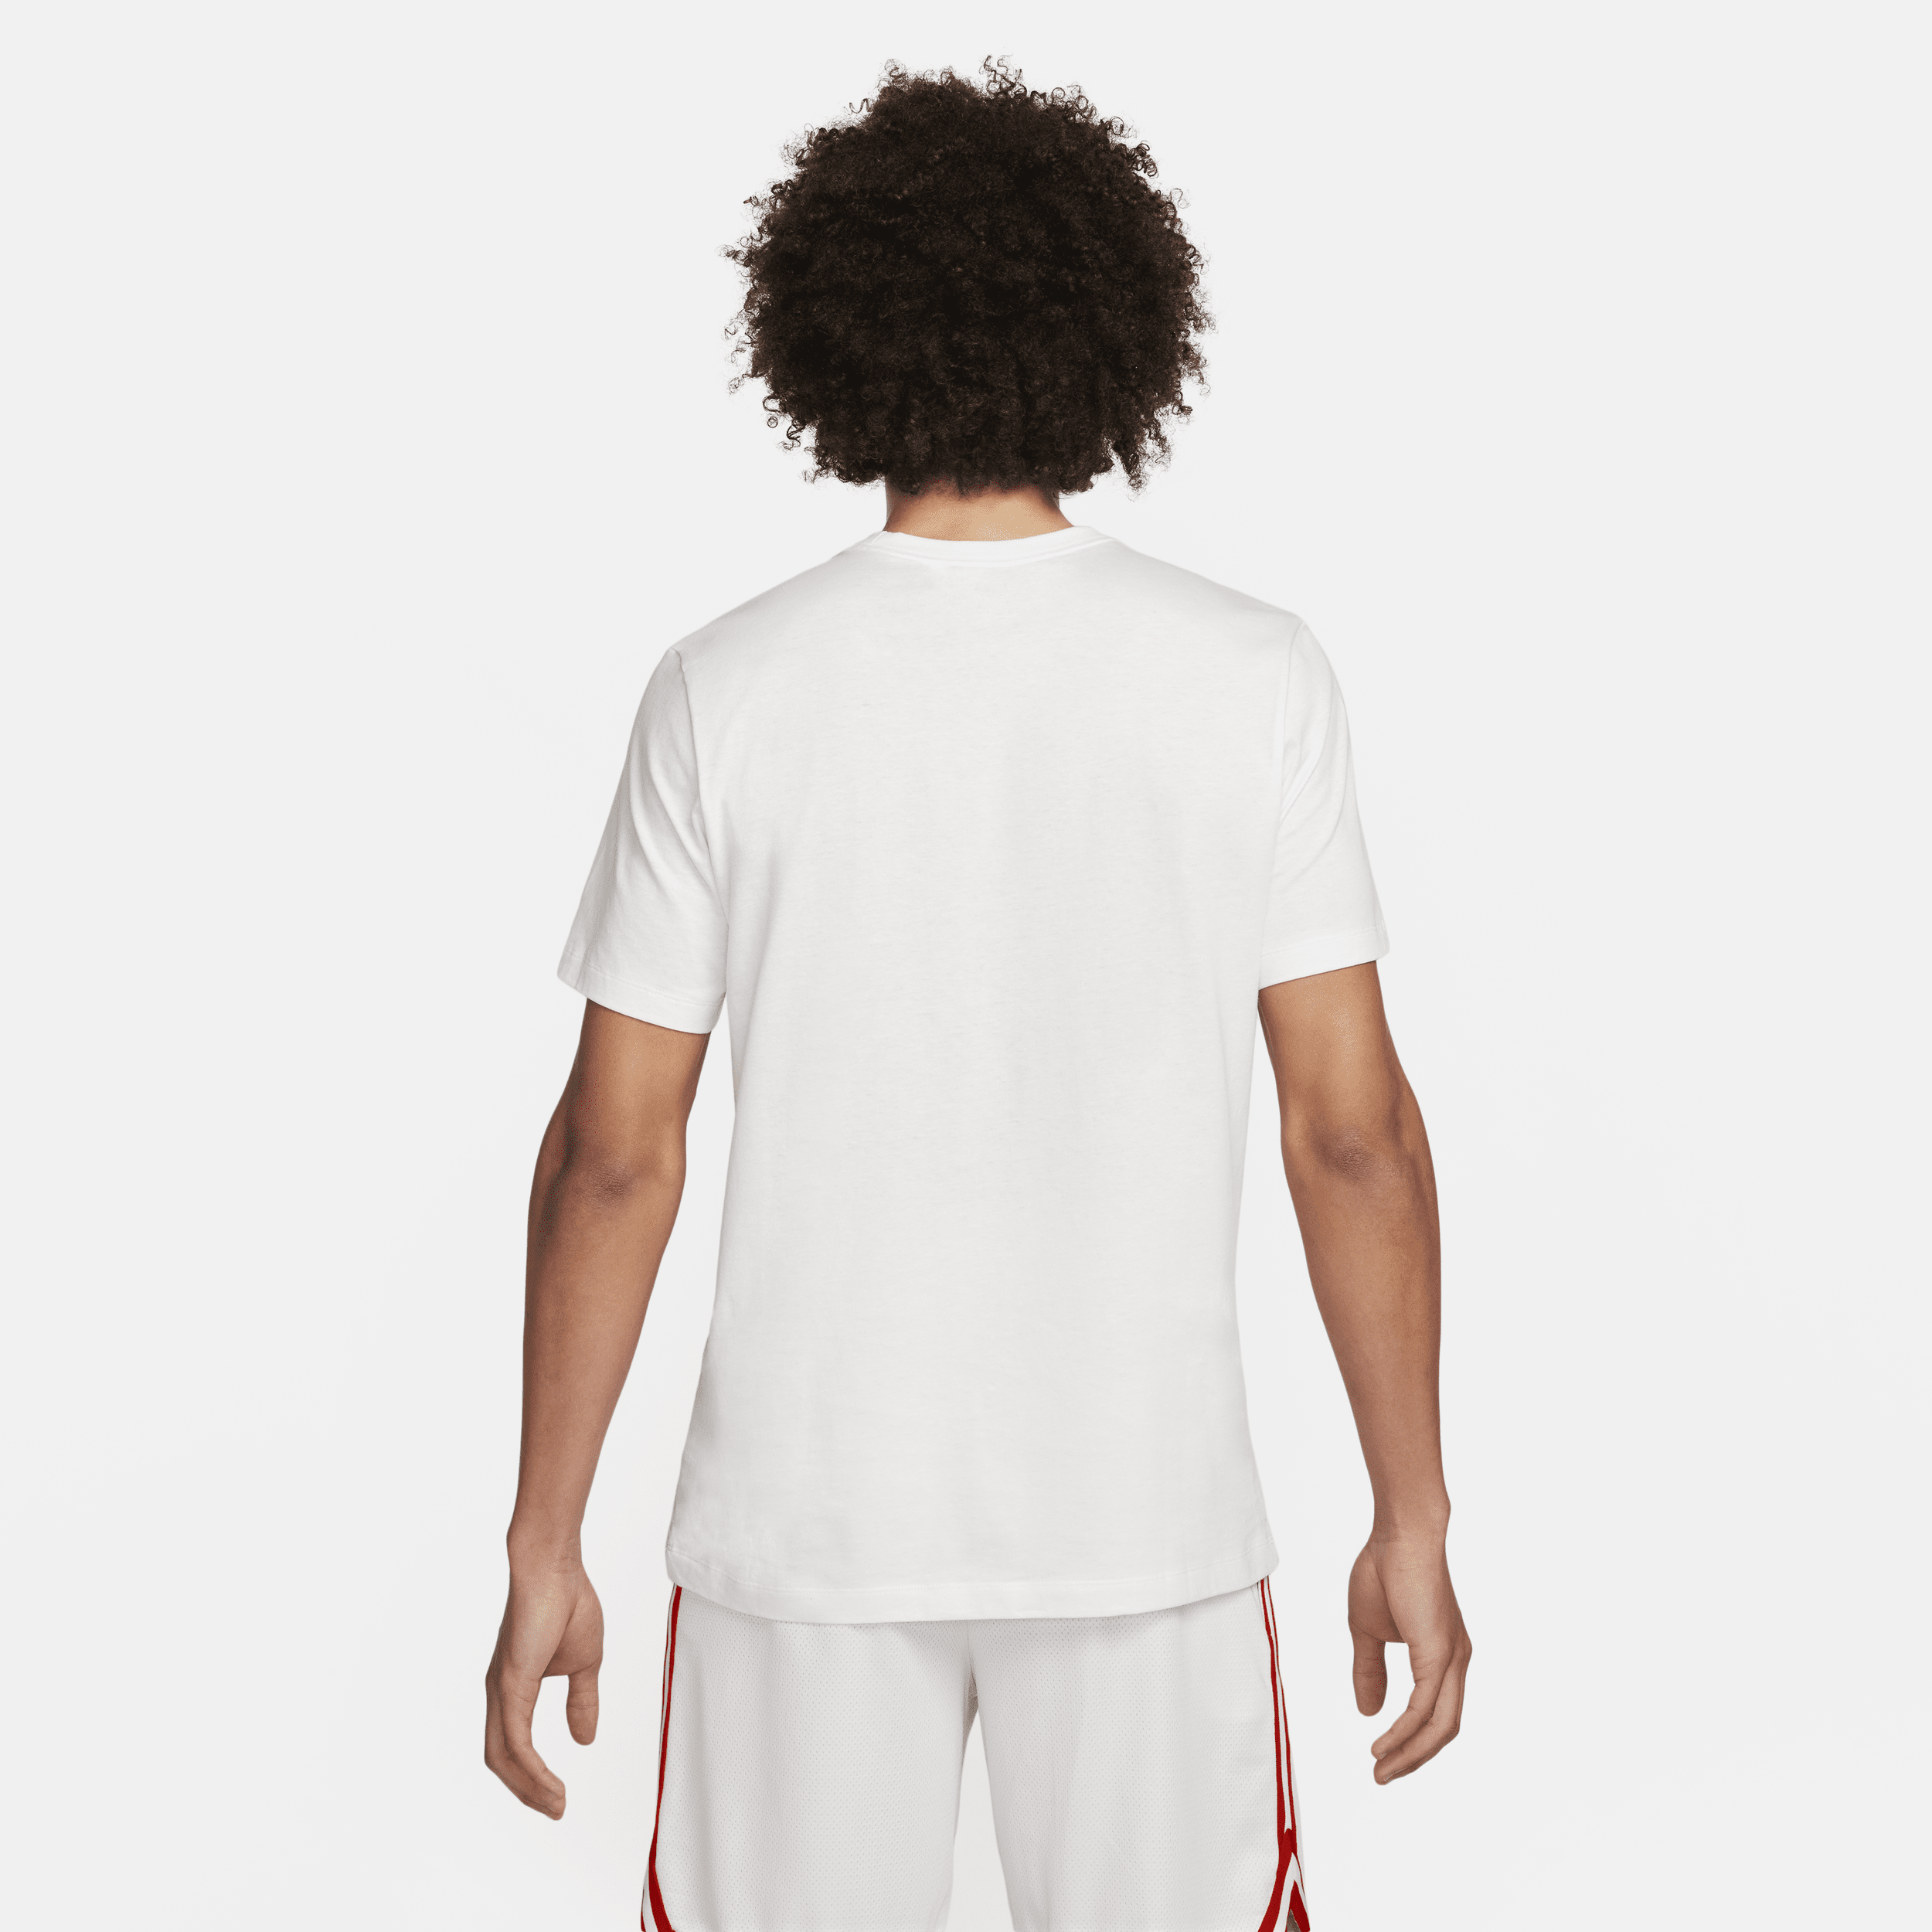 Nike Basketbalshirt voor heren Wit